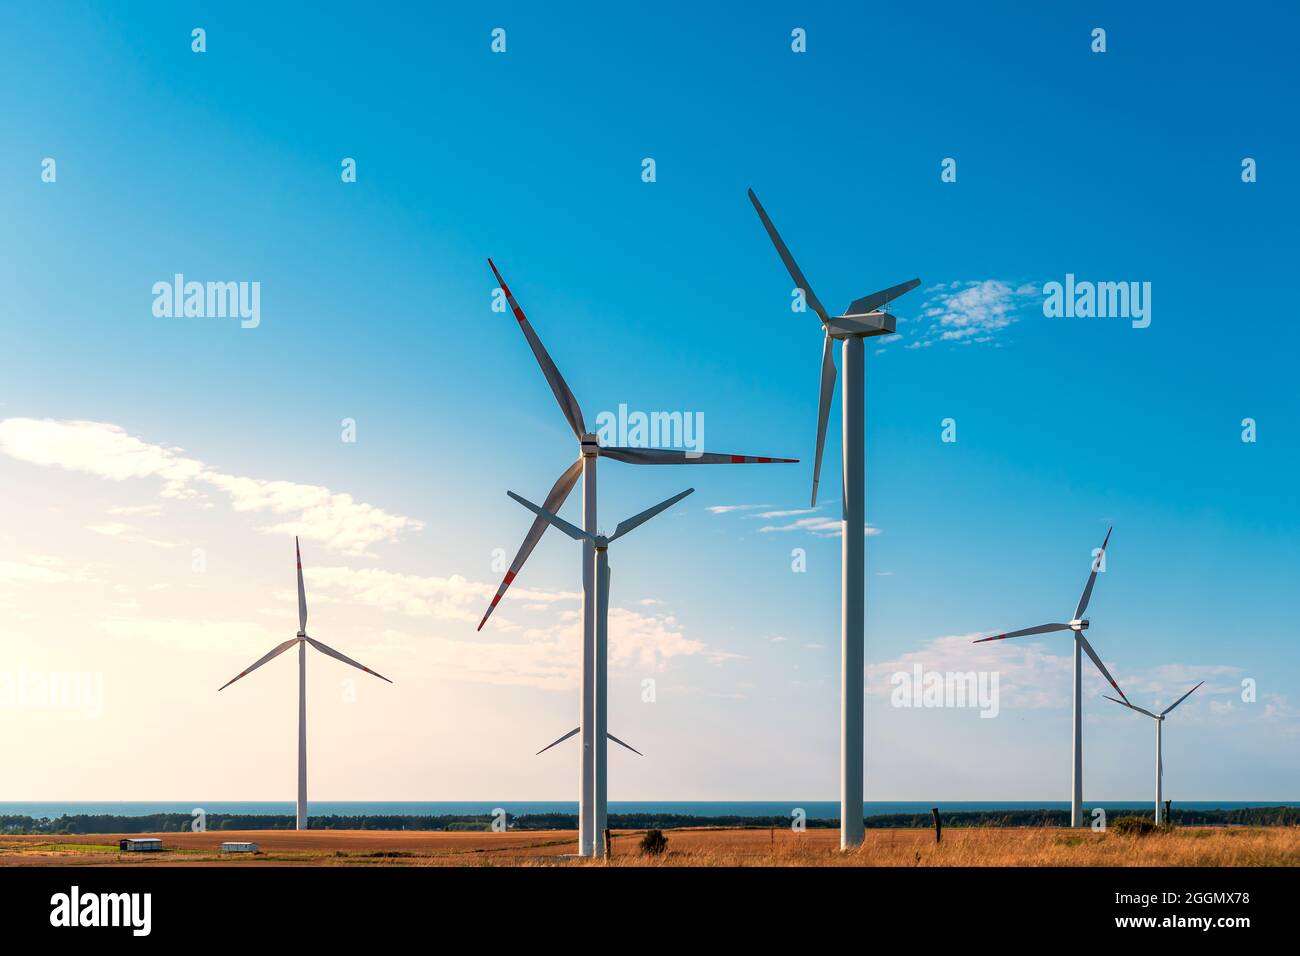 Moulins à vent produisant de l'électricité situé sur une colline dans la zone côtière, la mer Baltique en arrière-plan, parc éolien contre le ciel bleu, Pologne Europ Banque D'Images